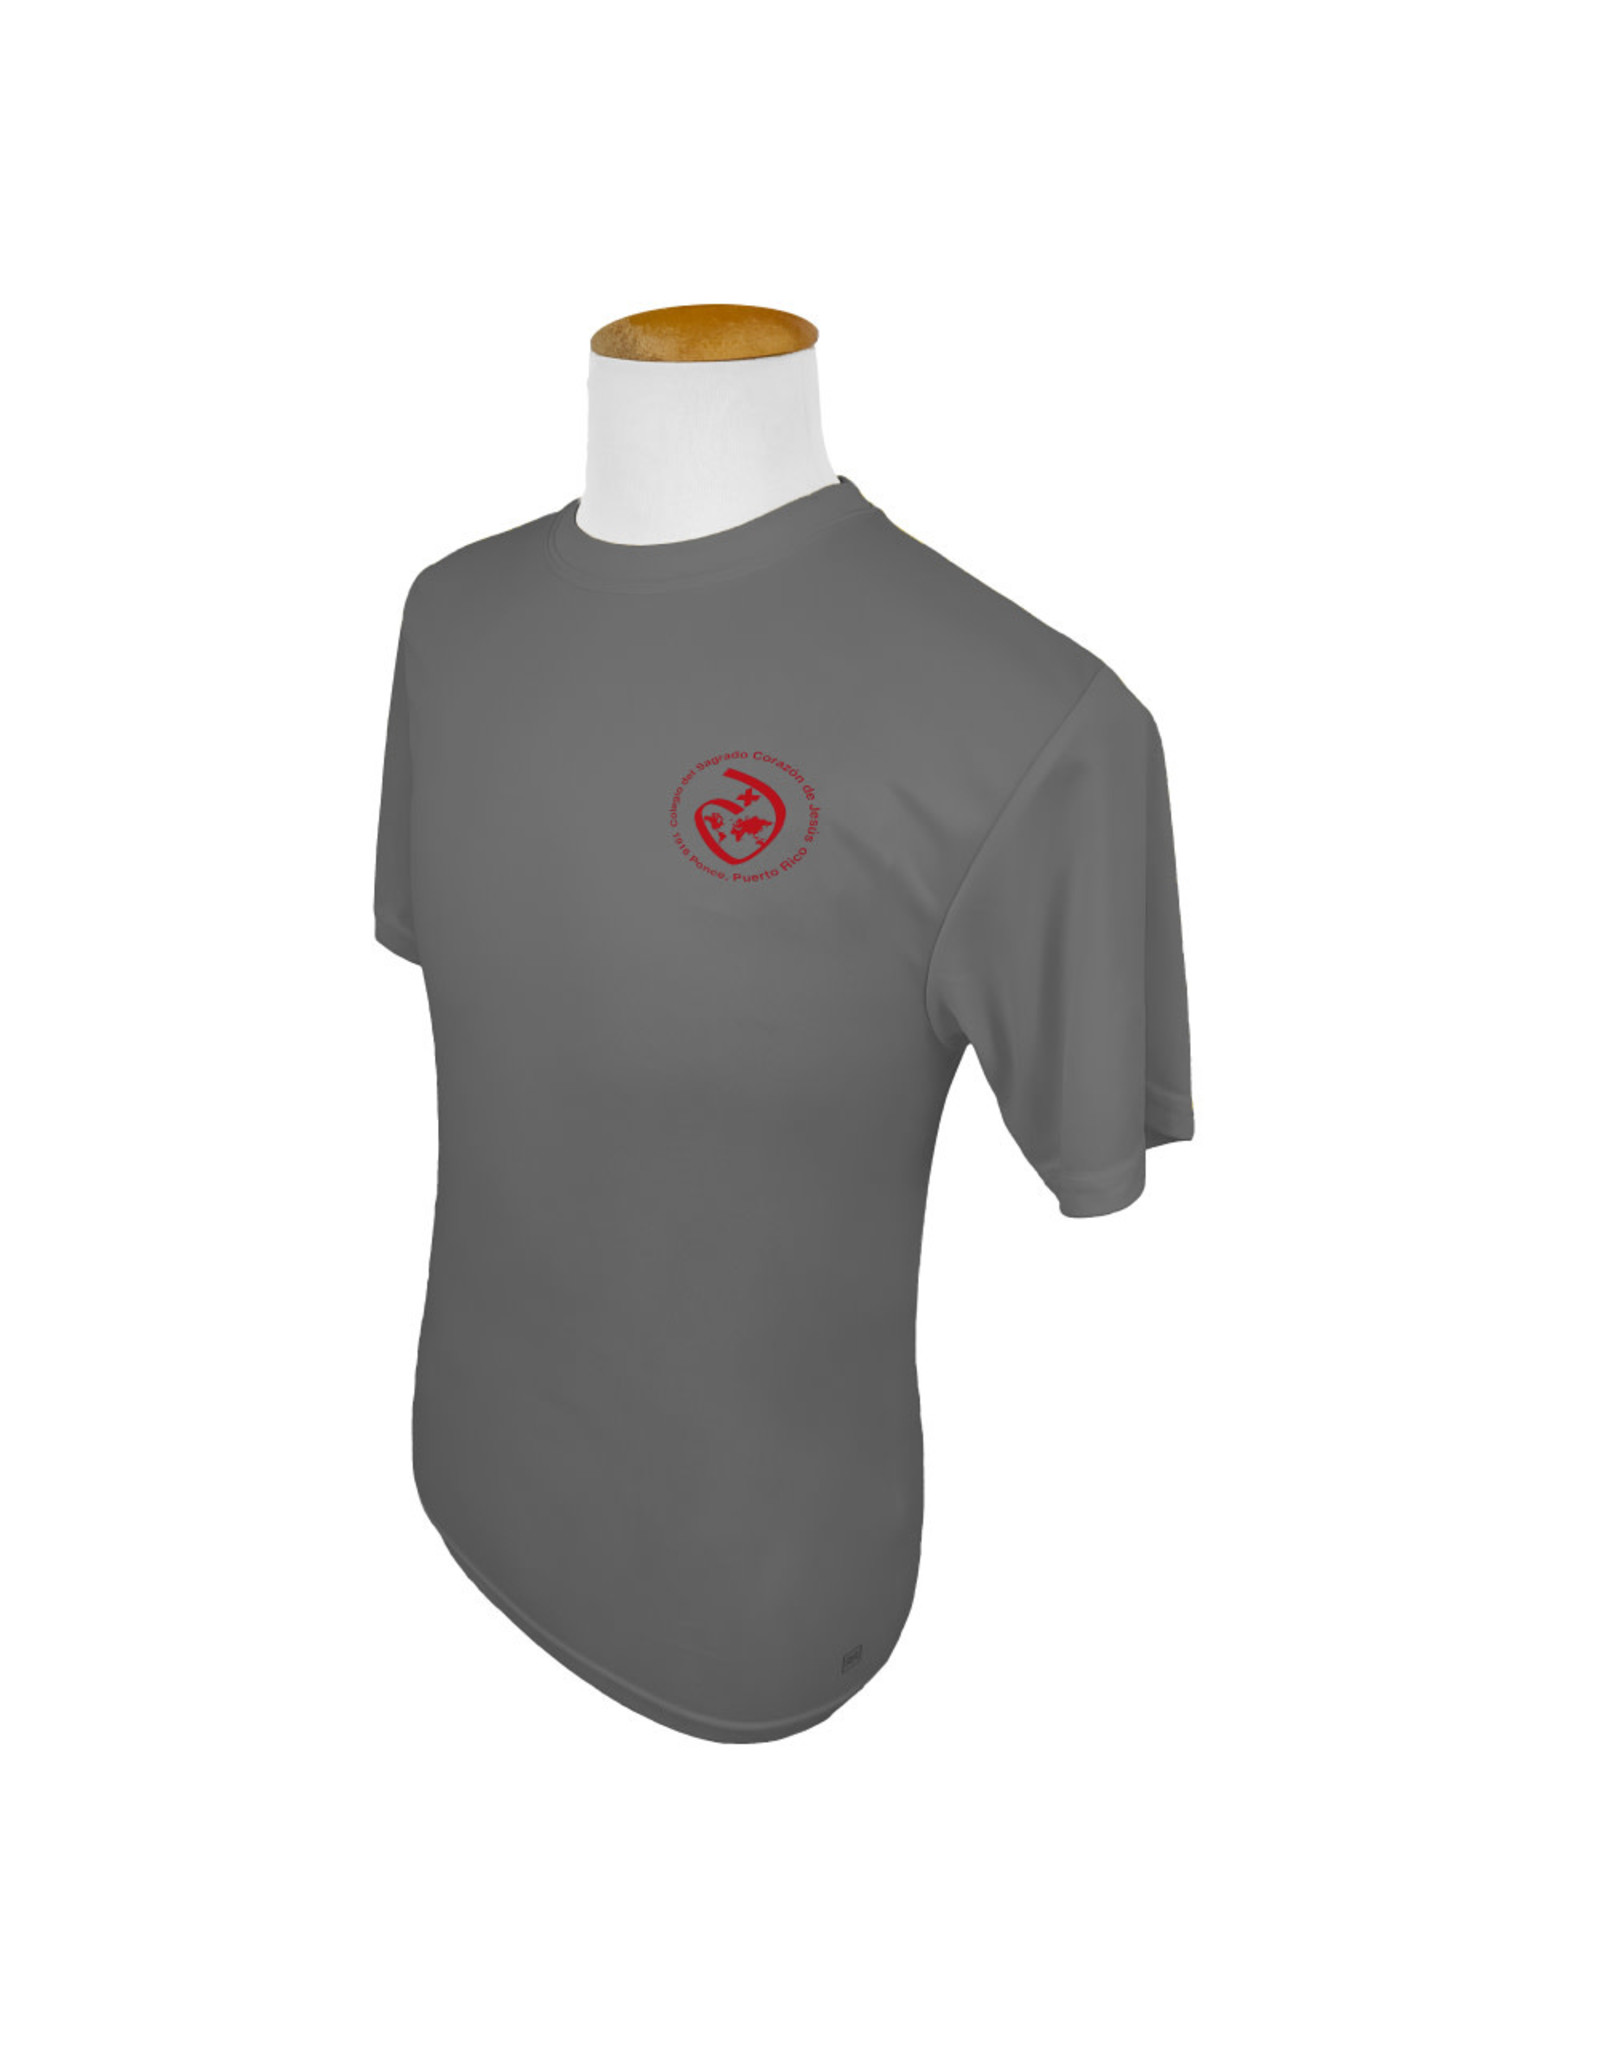 Col. Sagrado Corazon T-Shirt Charc Grey | Ed. Fisica | Col.Sagrado Corazon